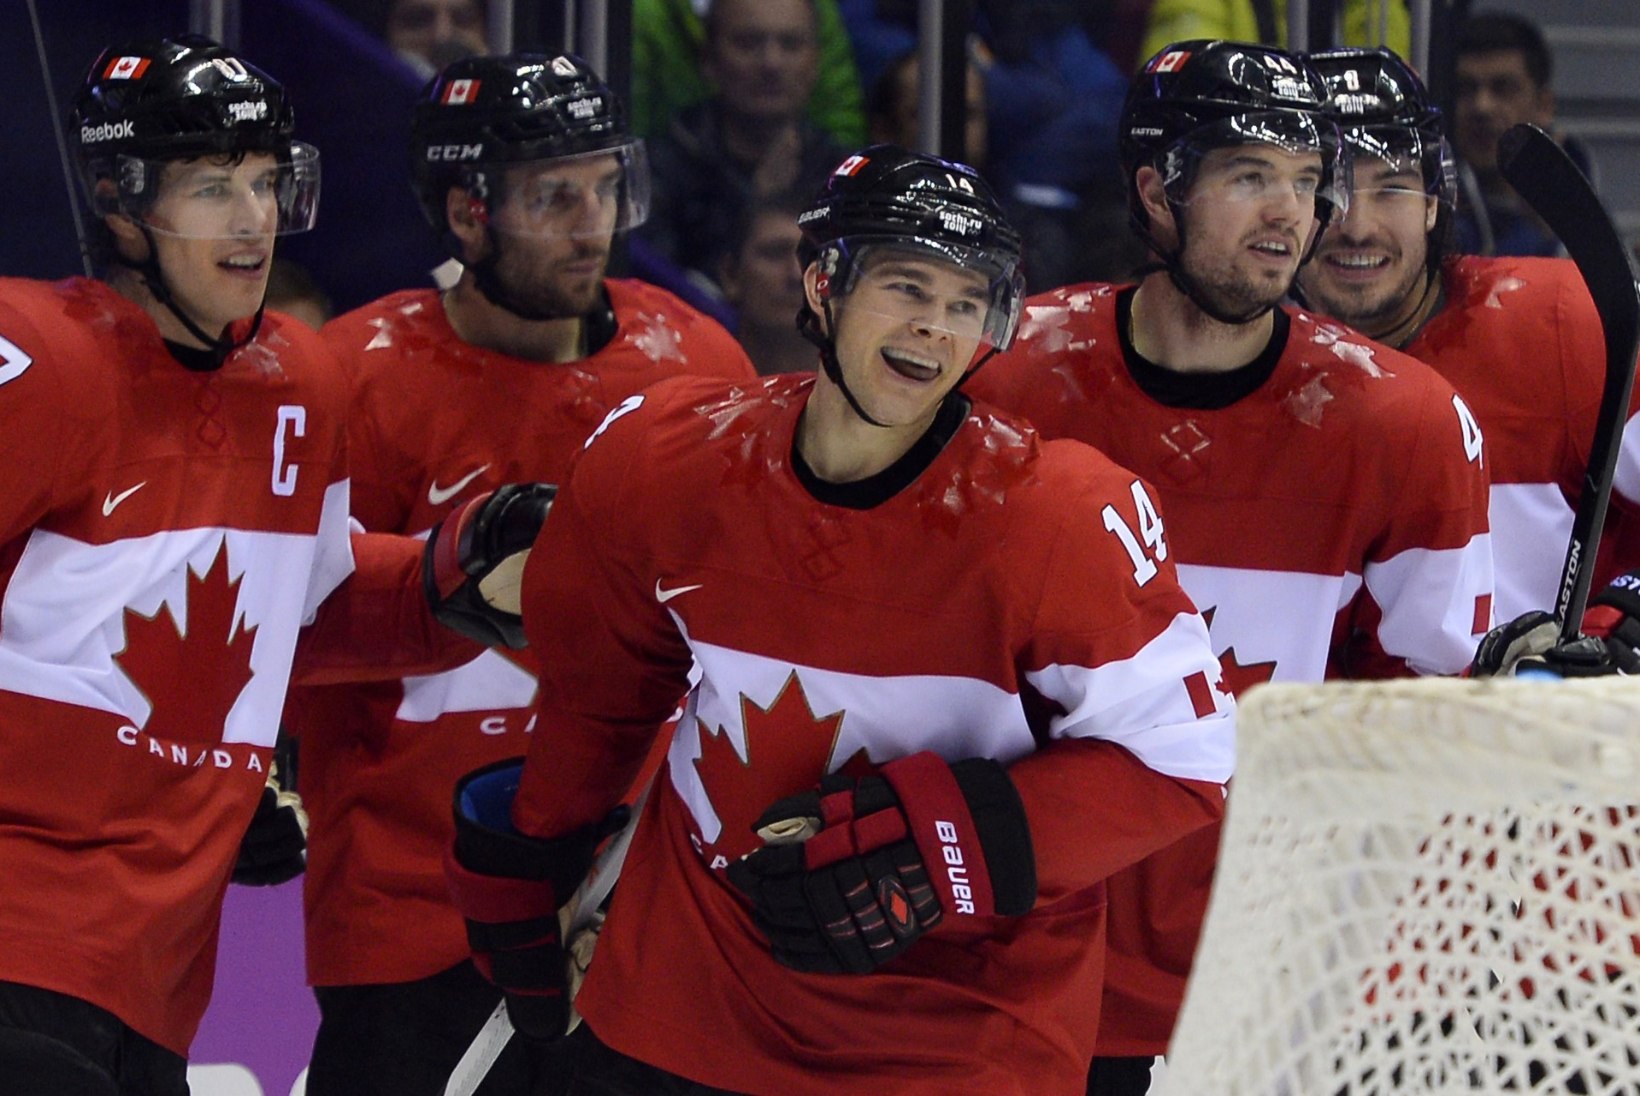 GALERII! JÄÄHOKIFINAAL: Kanada krooniti kindlalt olümpiavõitjaks!